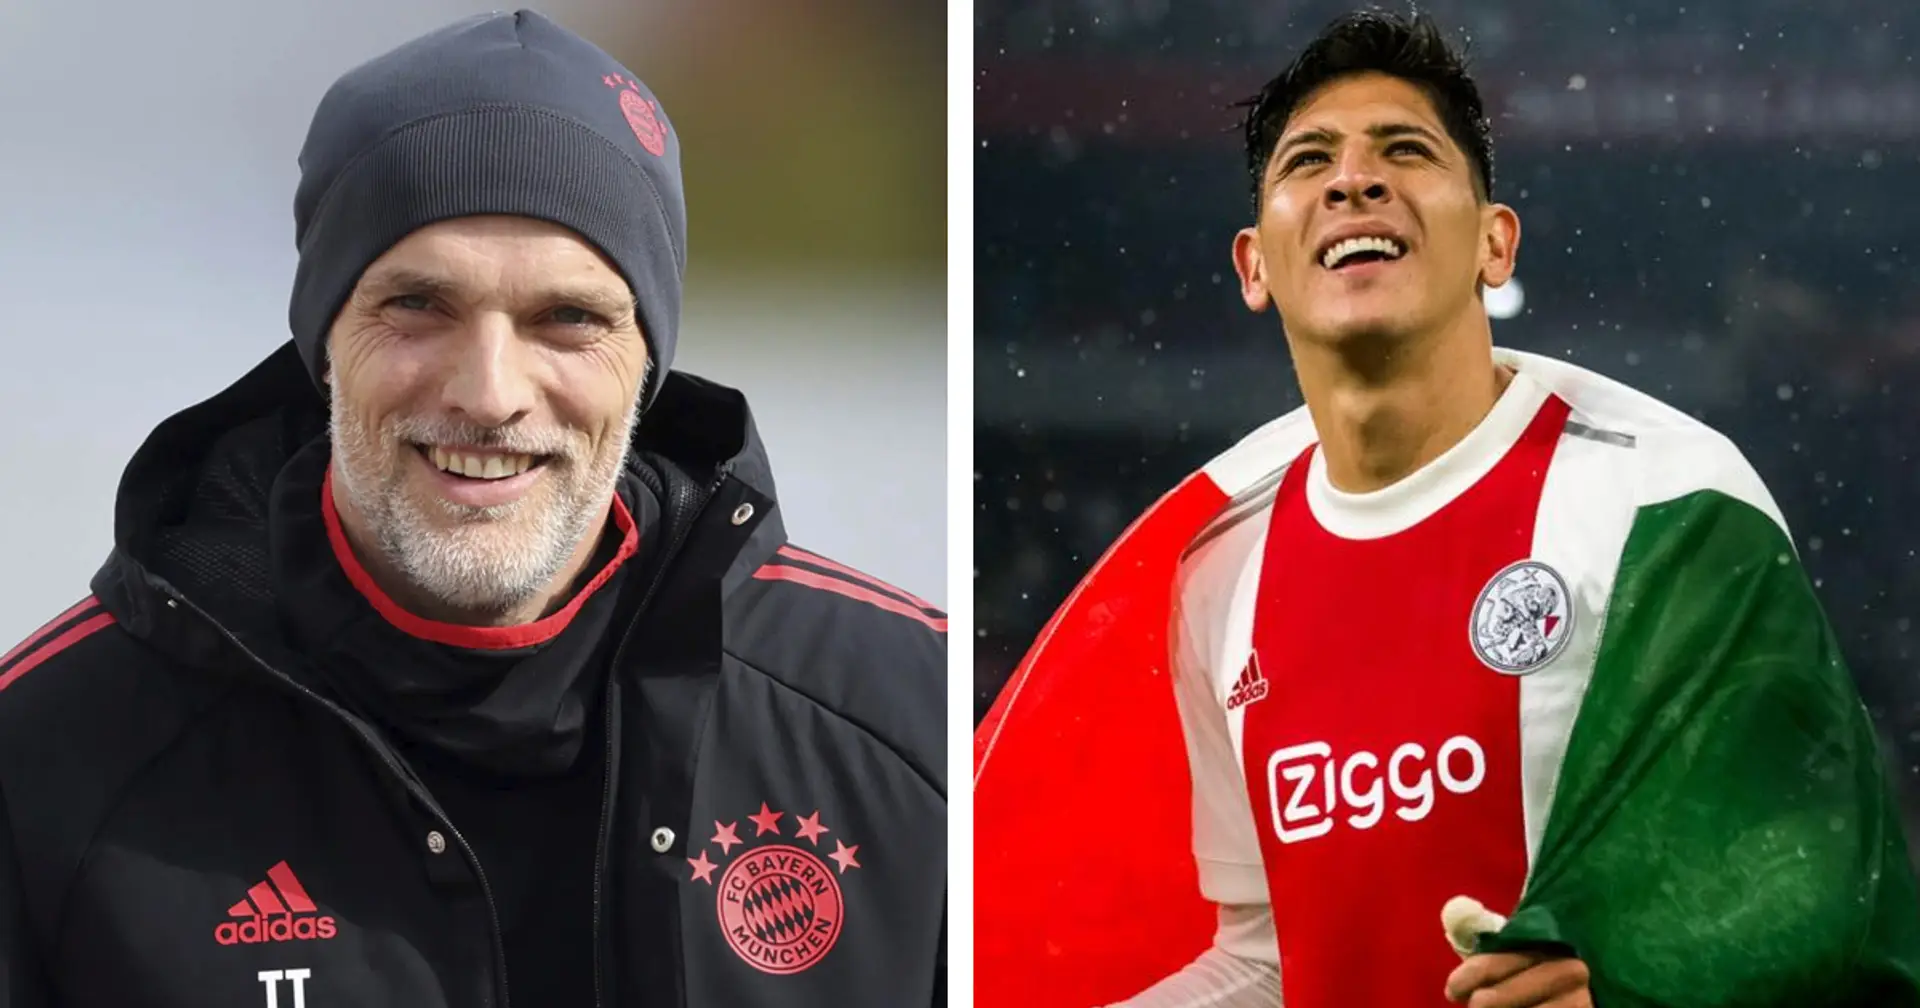 Tuchel seit langem ein großer Fan: Ajax-Mittelfeldspieler könnte ideale Verstärkung für Bayern sein